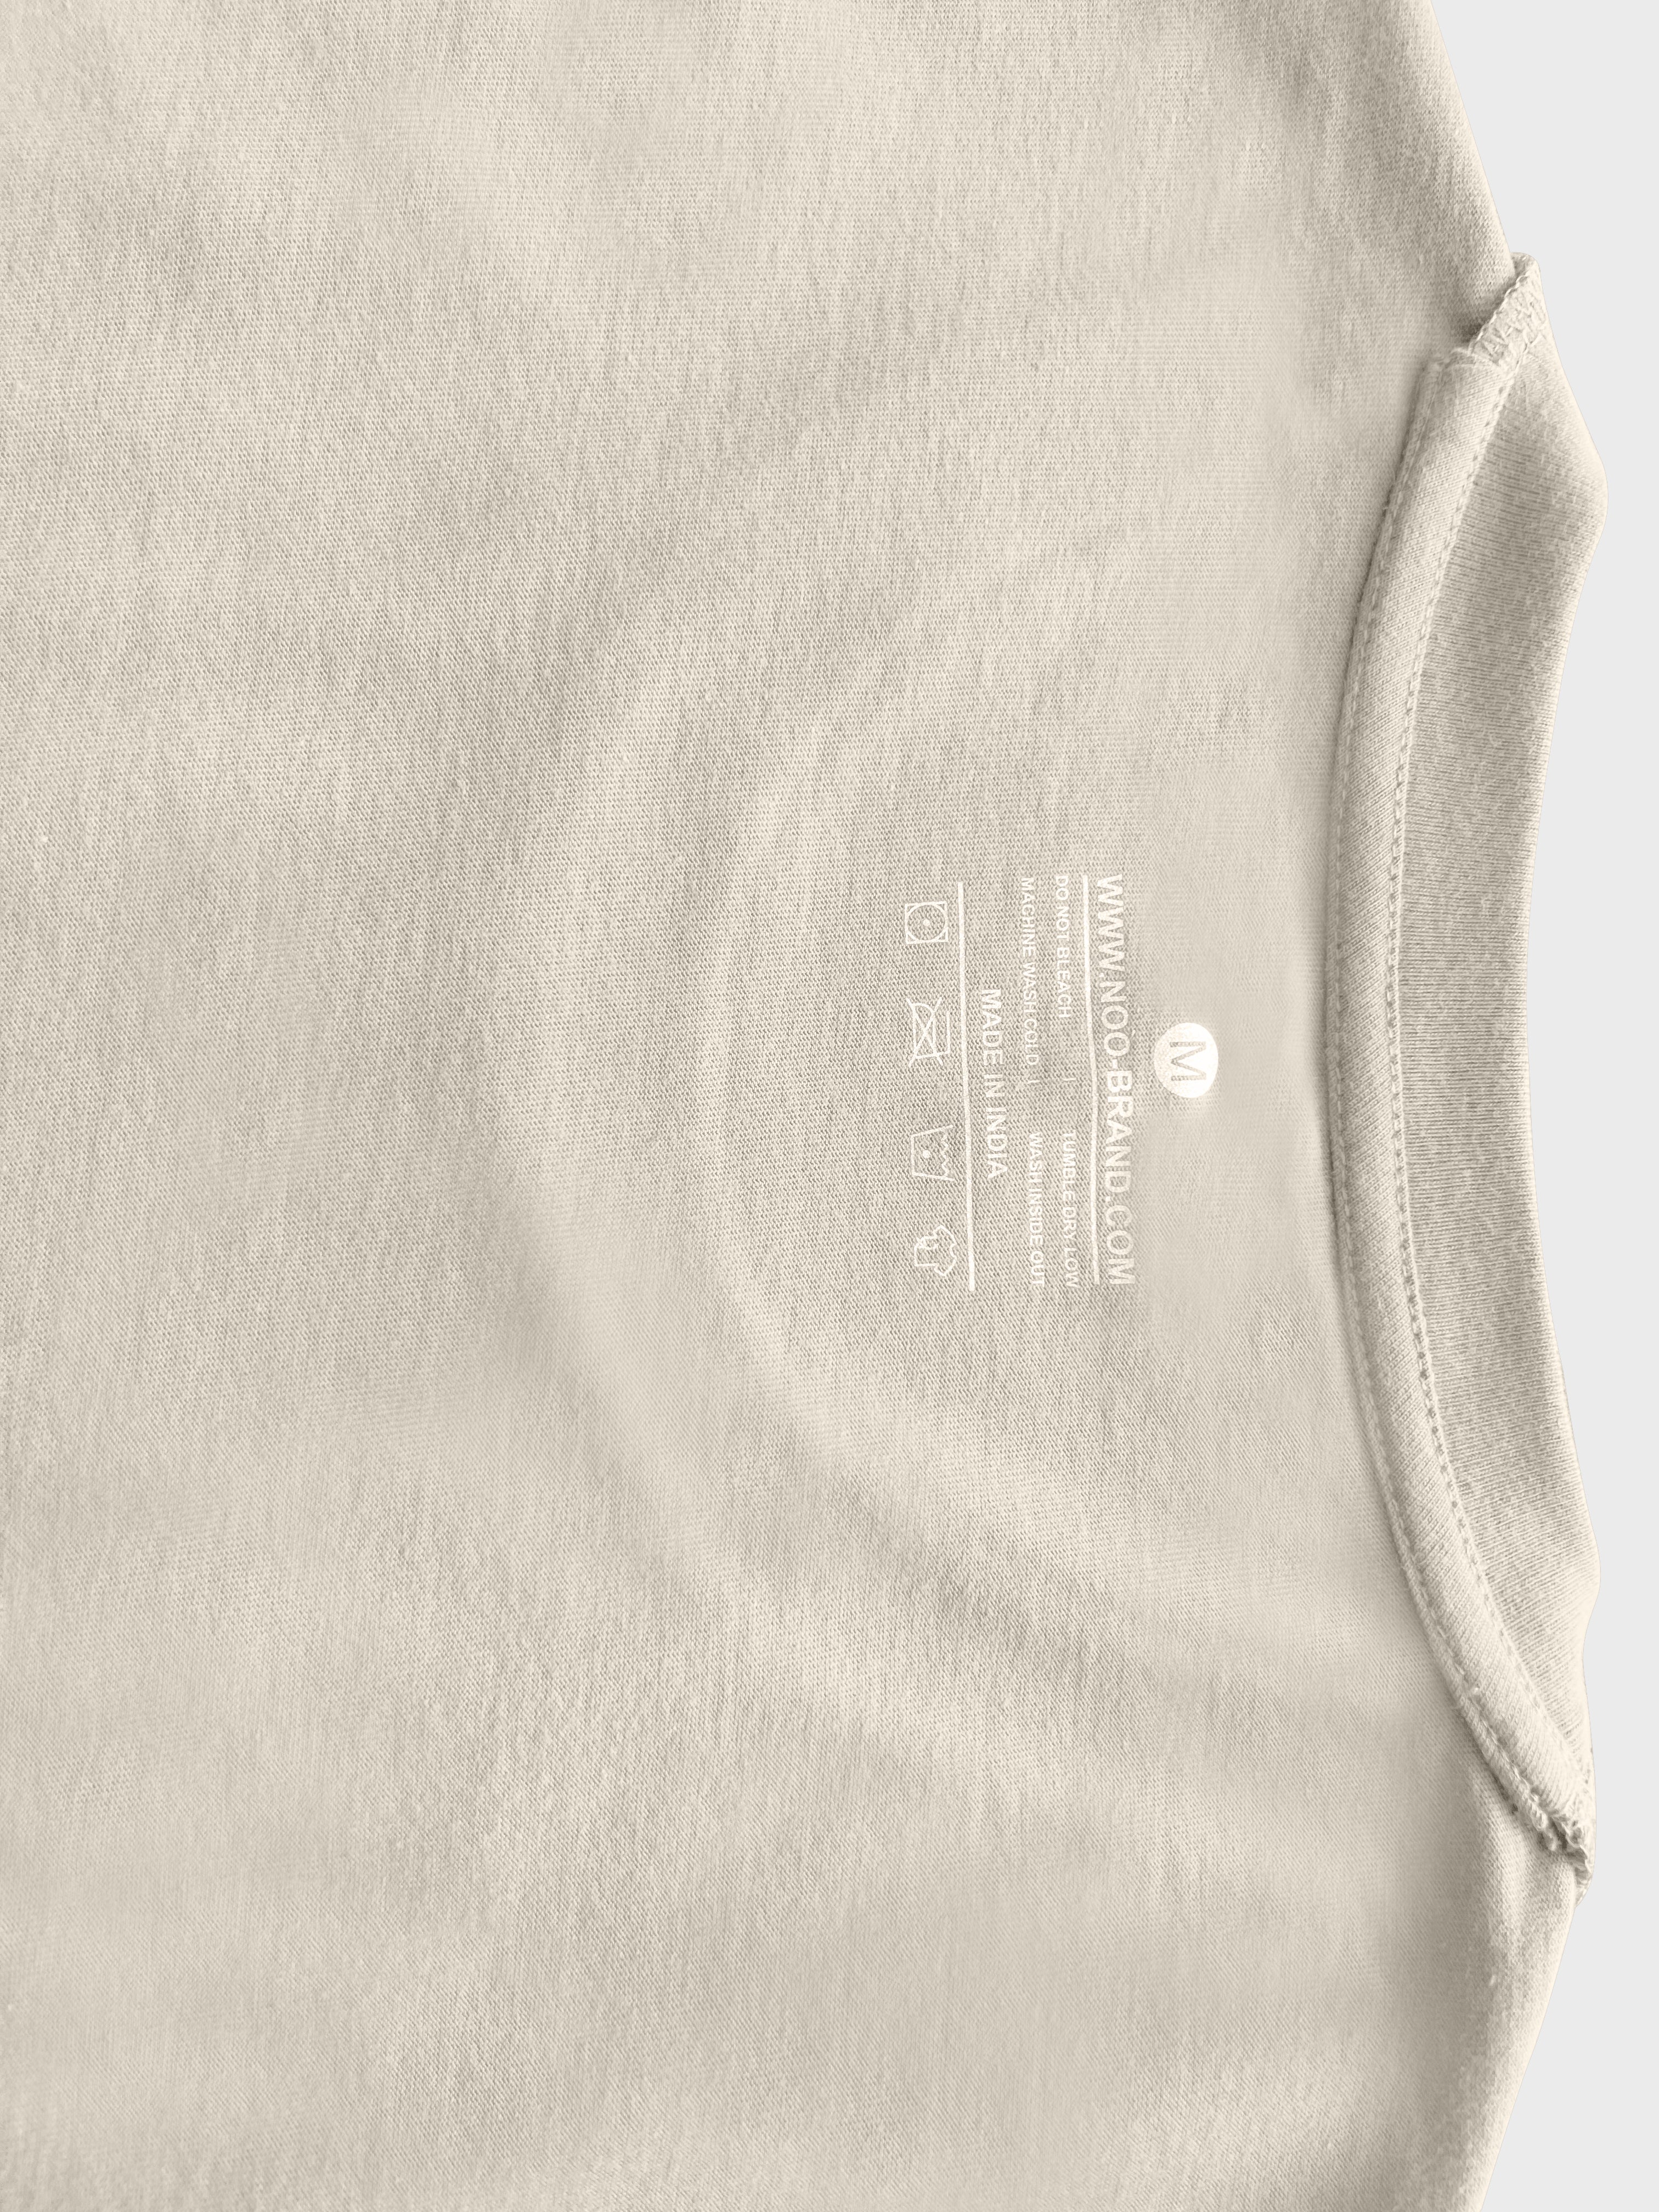 Crew Neck Sand color plain T-shirt  with NOO-BRAND Label